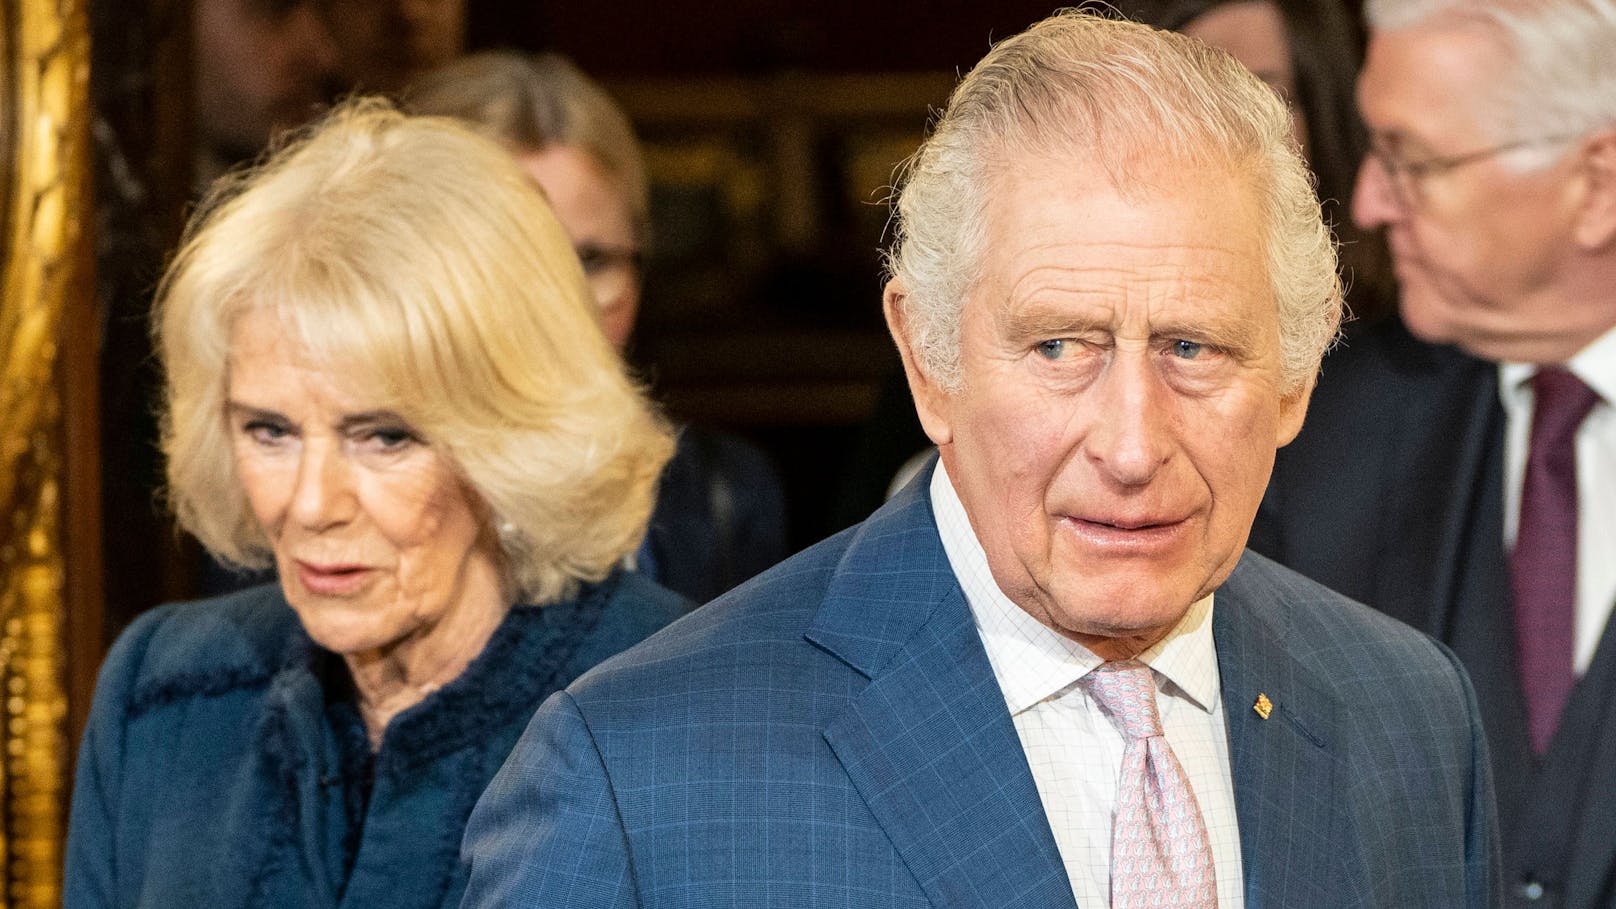 Camilla gibt Update über König Charles' Zustand nach OP